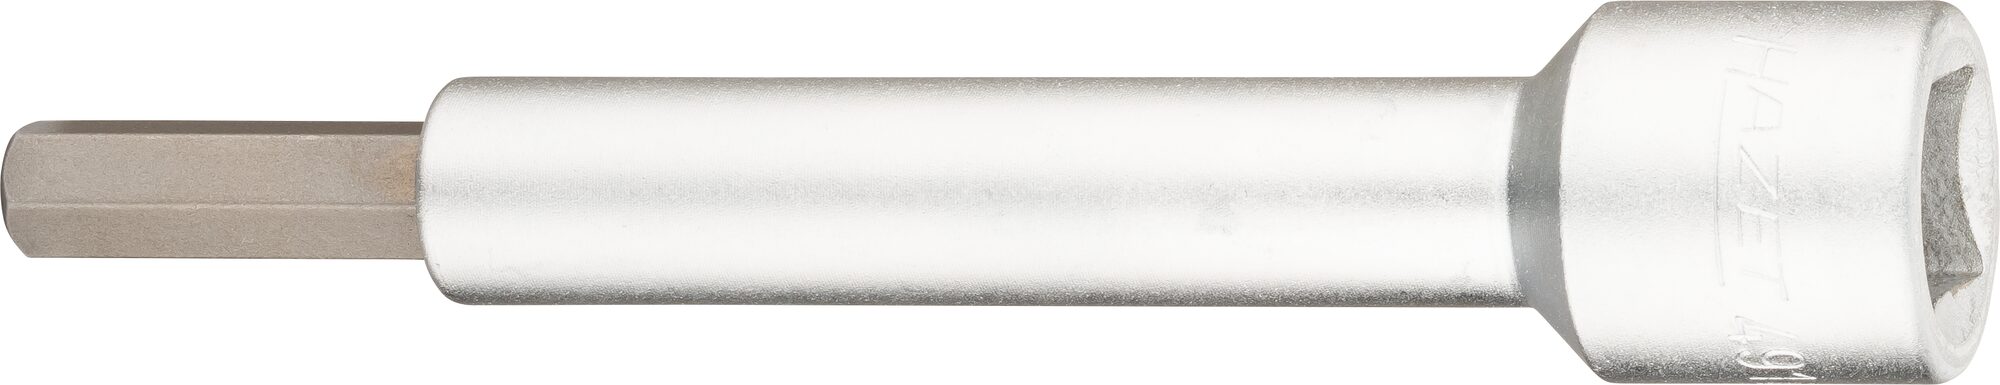 HAZET Verlängerung 4910-8 · Vierkant hohl 12,5 mm (1/2 Zoll) · Innen Sechskant Profil · 8 mm